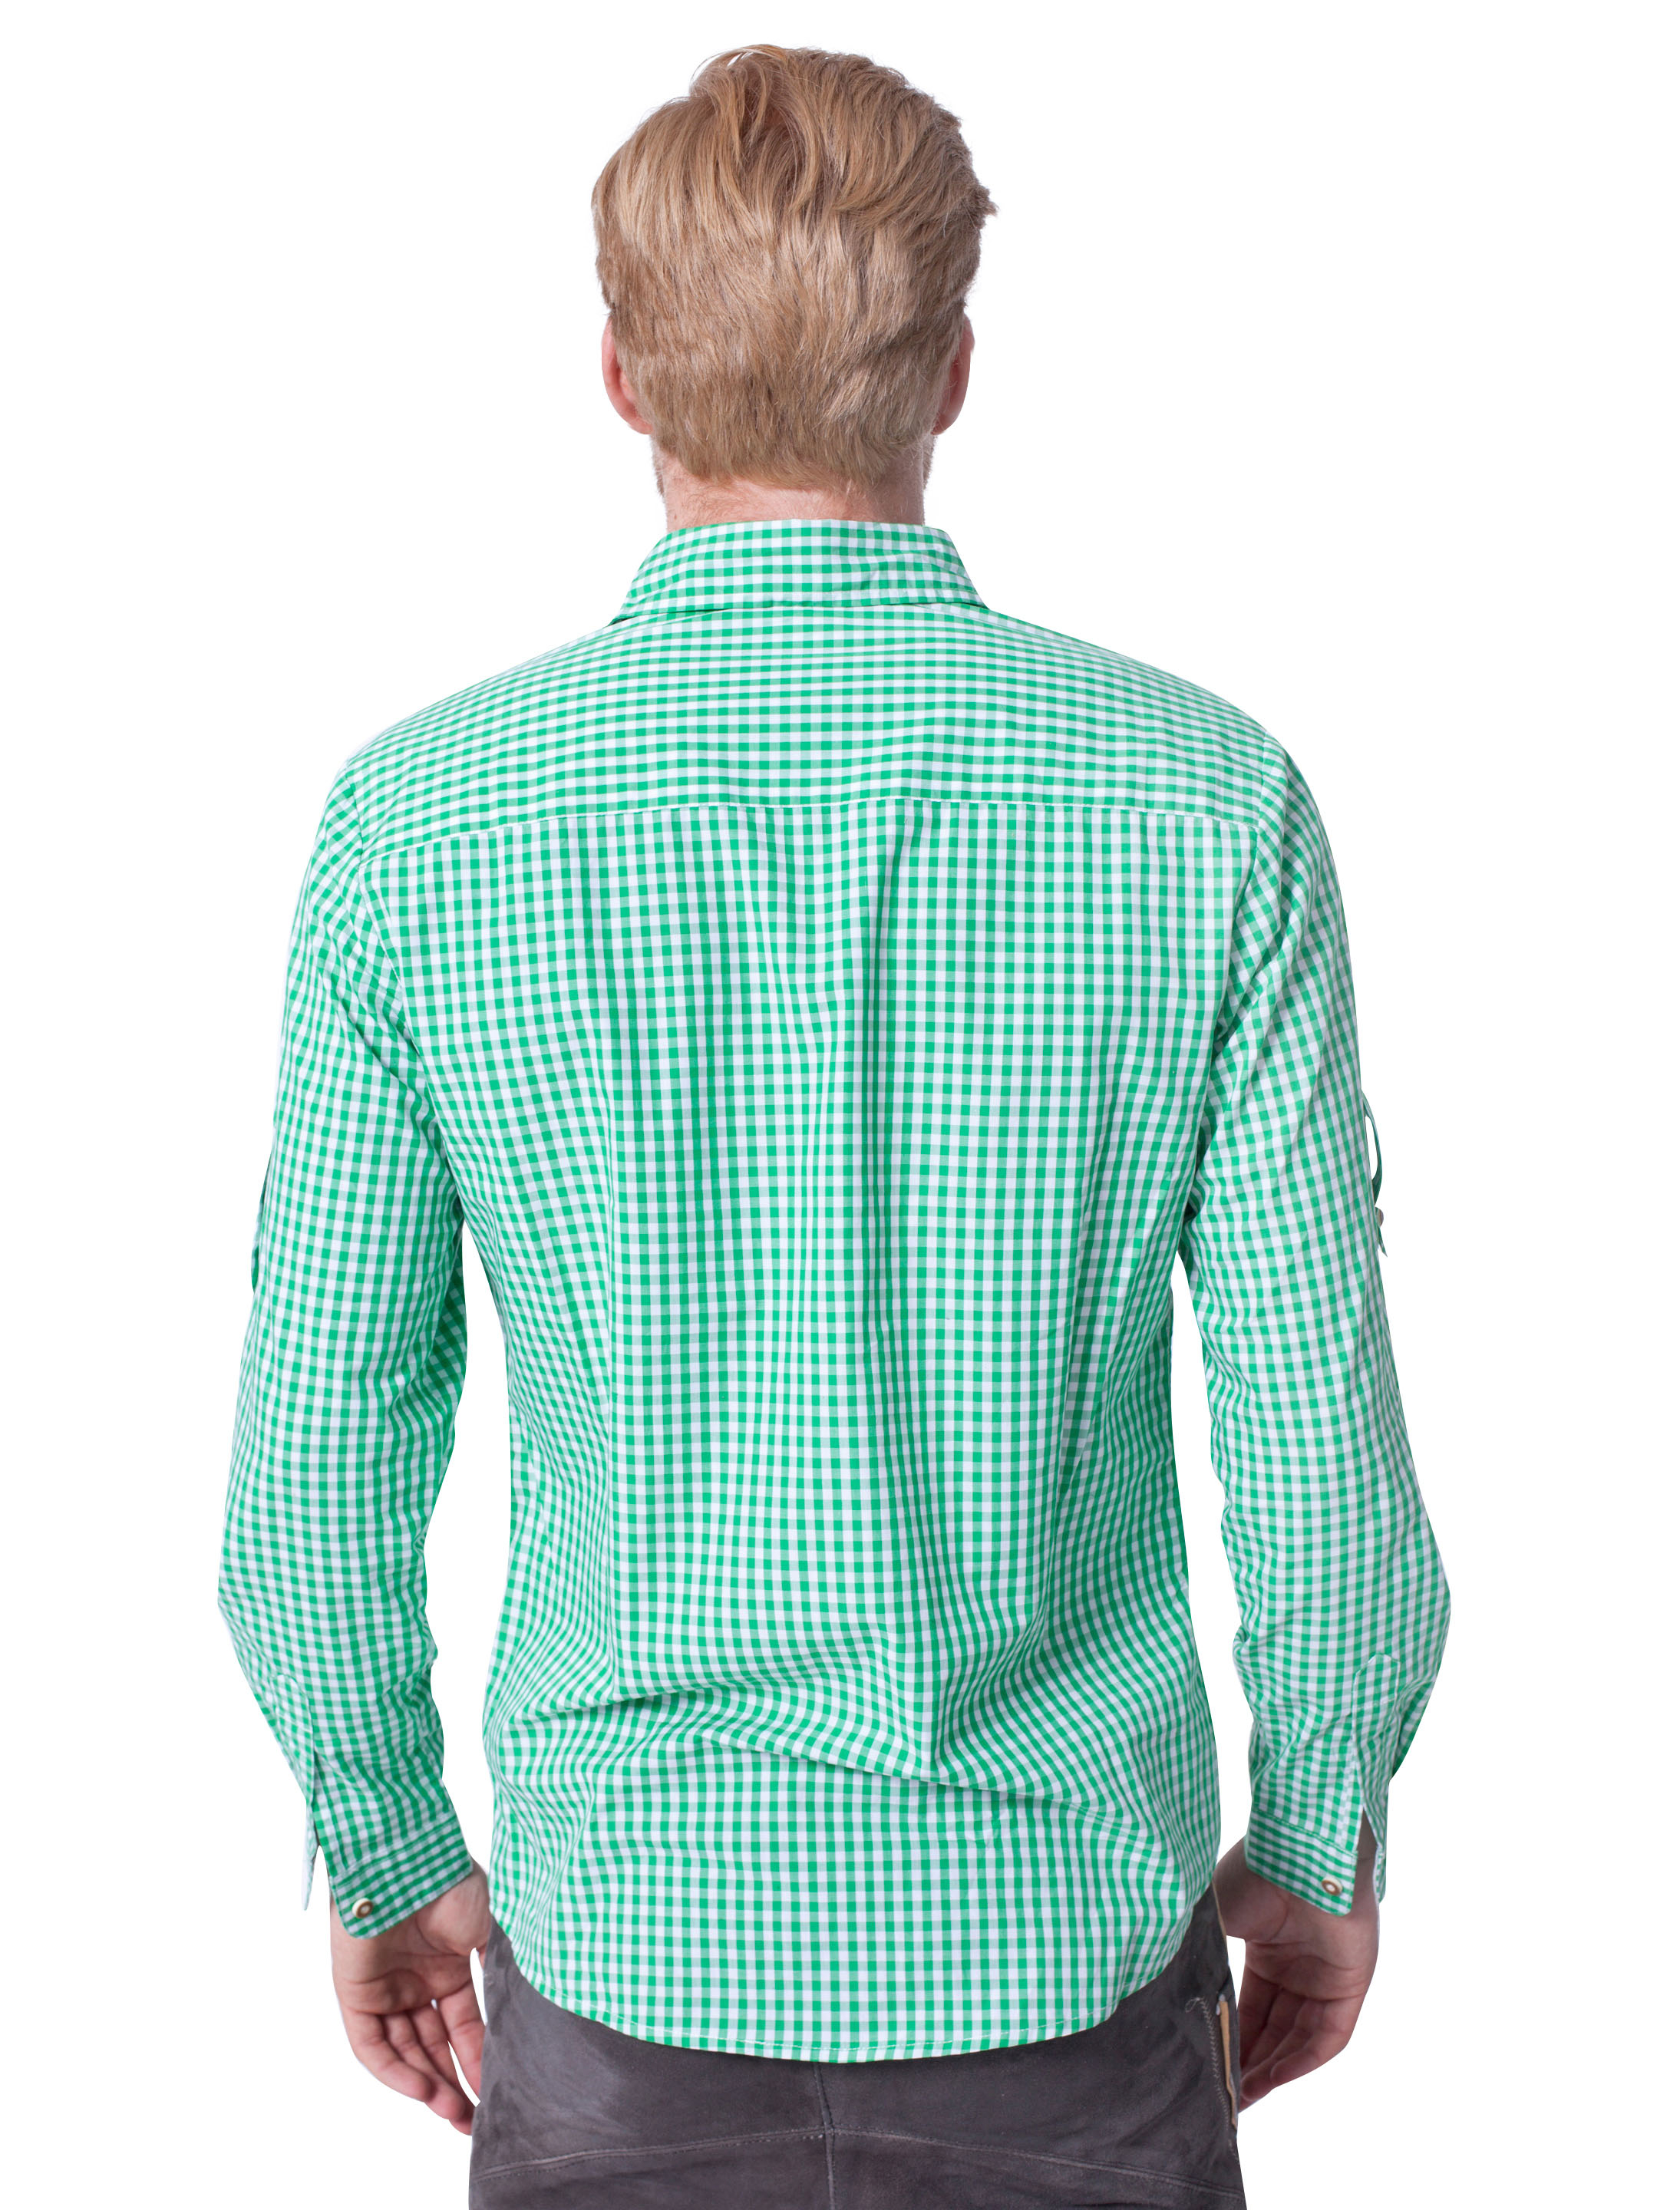 Trachtenhemd Herren grün/weiß 2XL